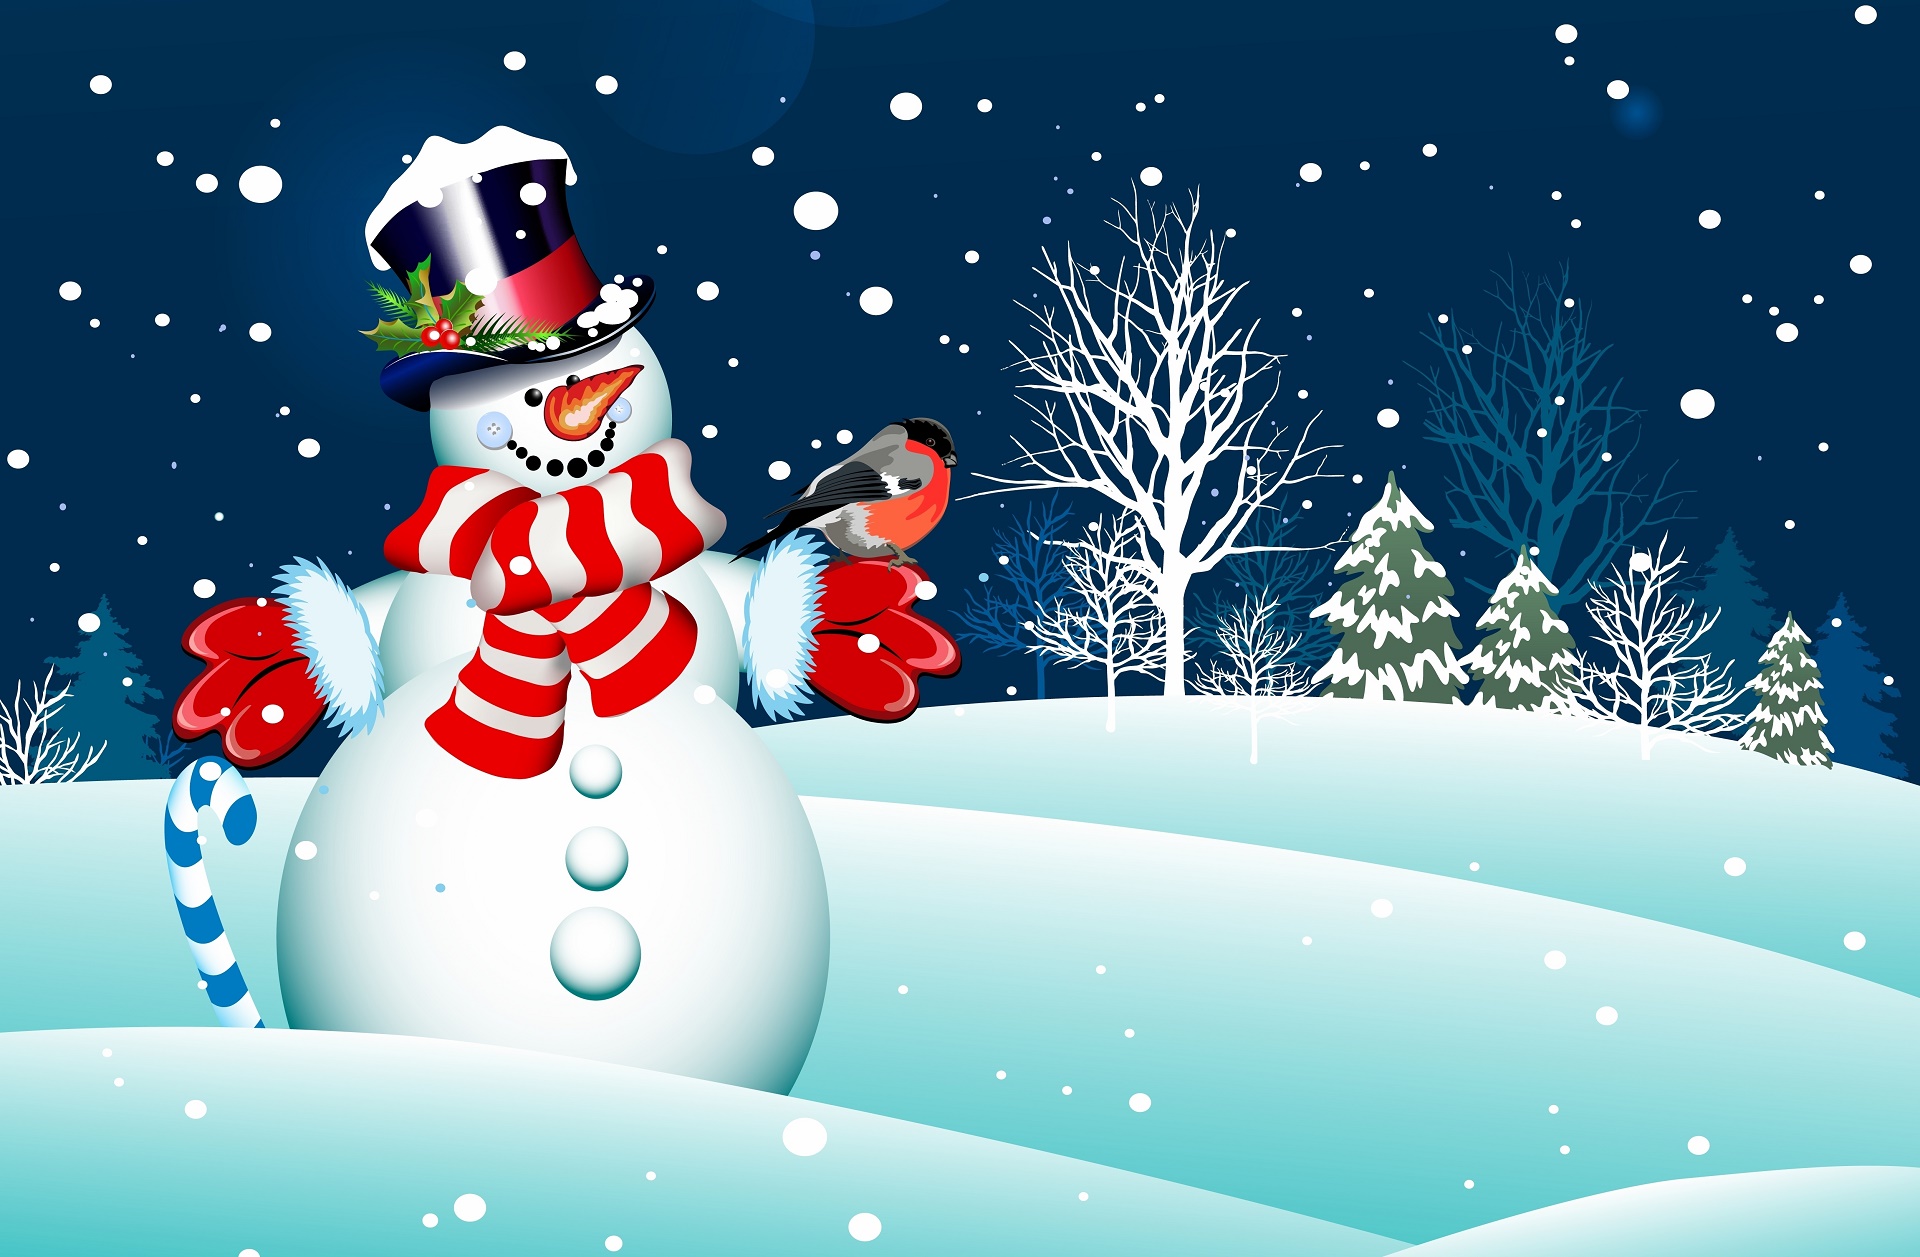 雪だるまの壁紙のhd,雪だるま,冬,雪,クリスマス・イブ,クリスマス